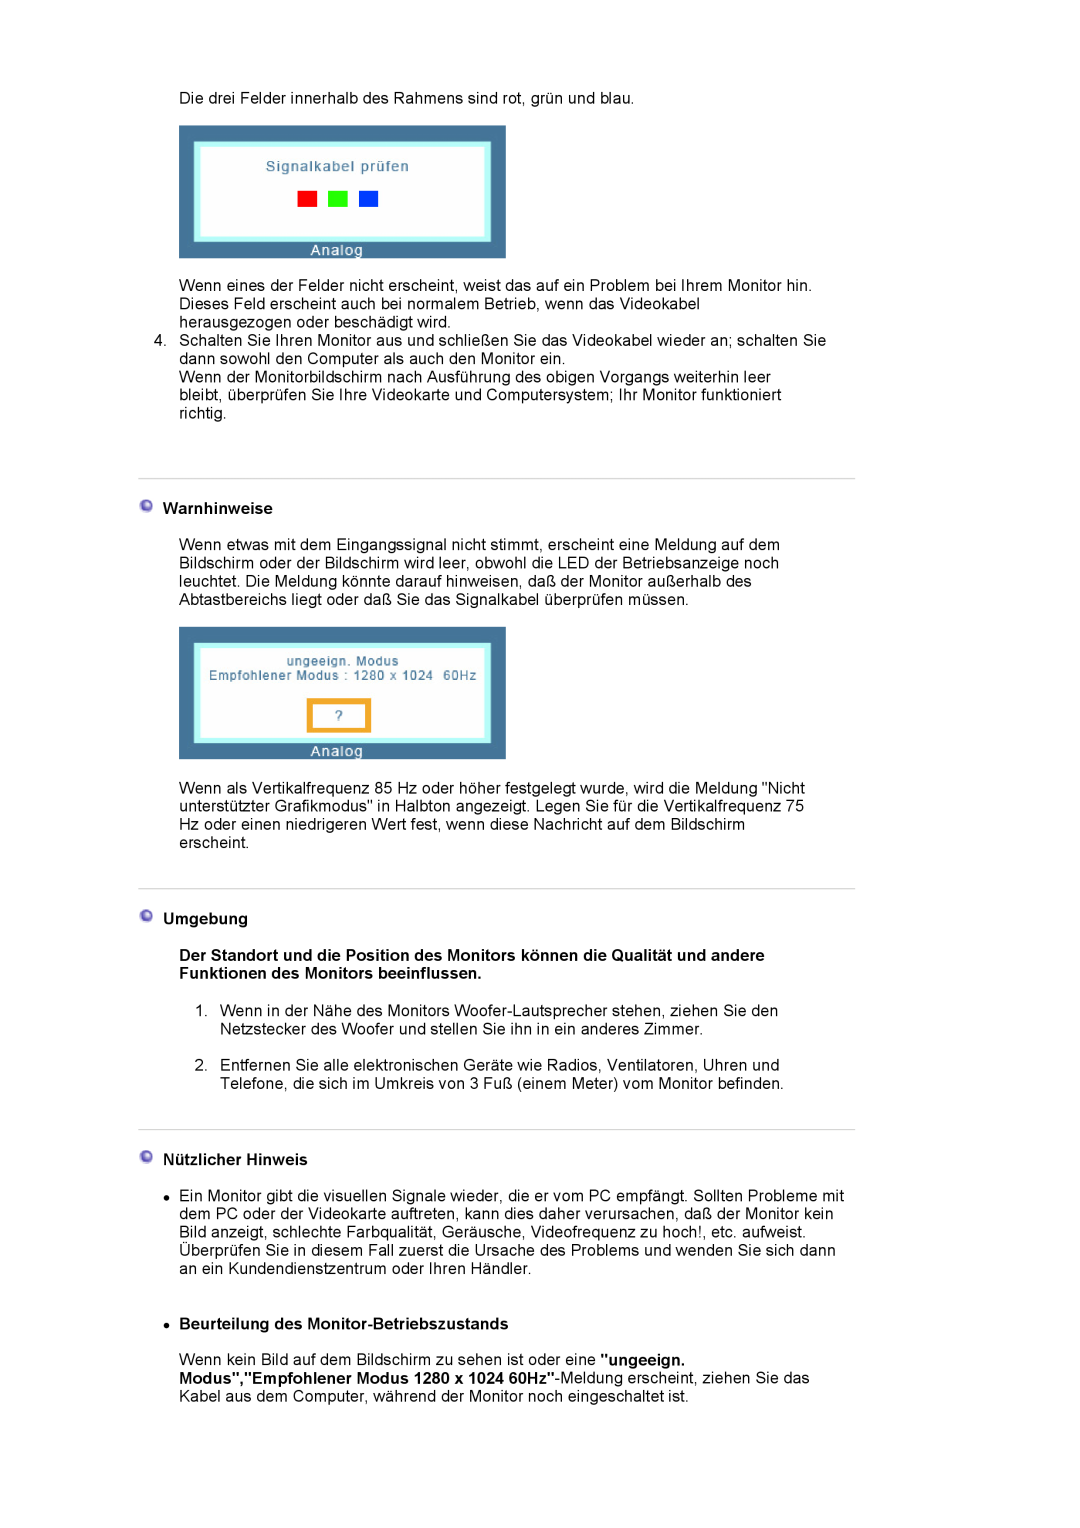 Samsung LS17MJSKS/EDC manual Warnhinweise, Umgebung, Nützlicher Hinweis, z Beurteilung des Monitor-Betriebszustands 